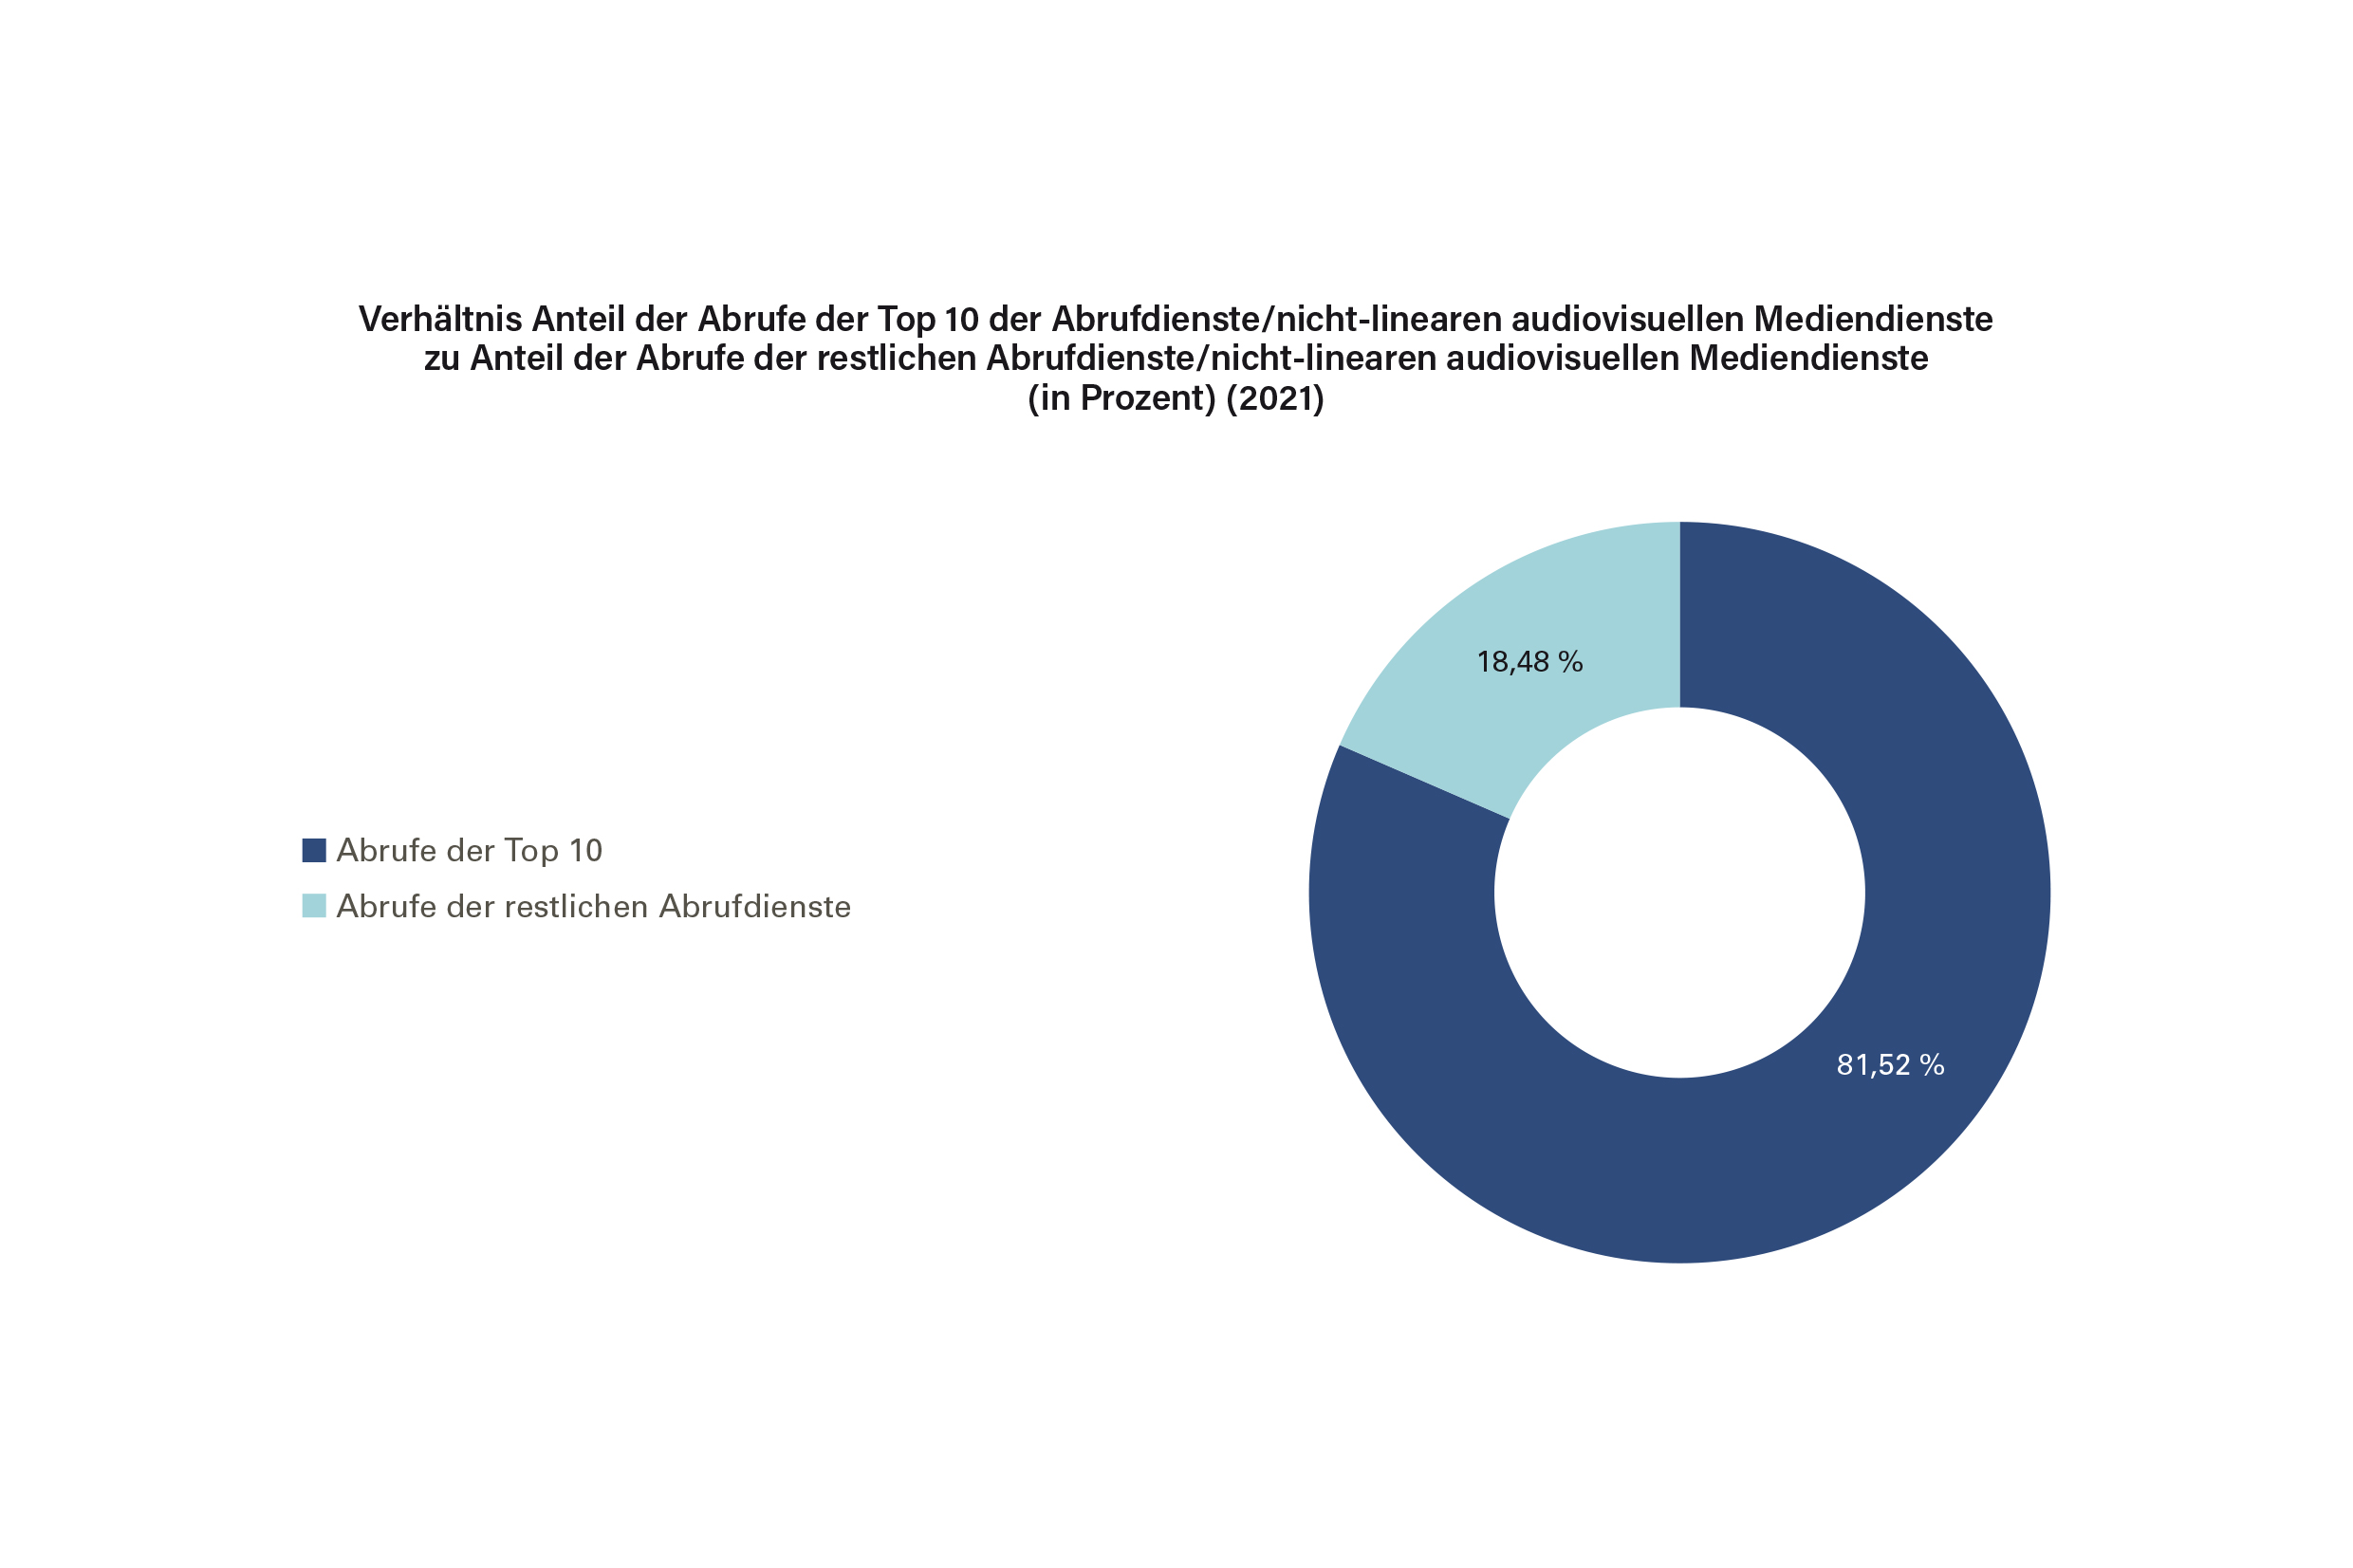 Verhältnis Anteil der Abrufe der Top 10 der Abrufdienste/nicht-linearen audiovisuellen Mediendienste zu Anteil der Abrufe der restlichen Abrufdienste/ nicht-linearen audiovisuellen Mediendienste (in Prozent) (2021)